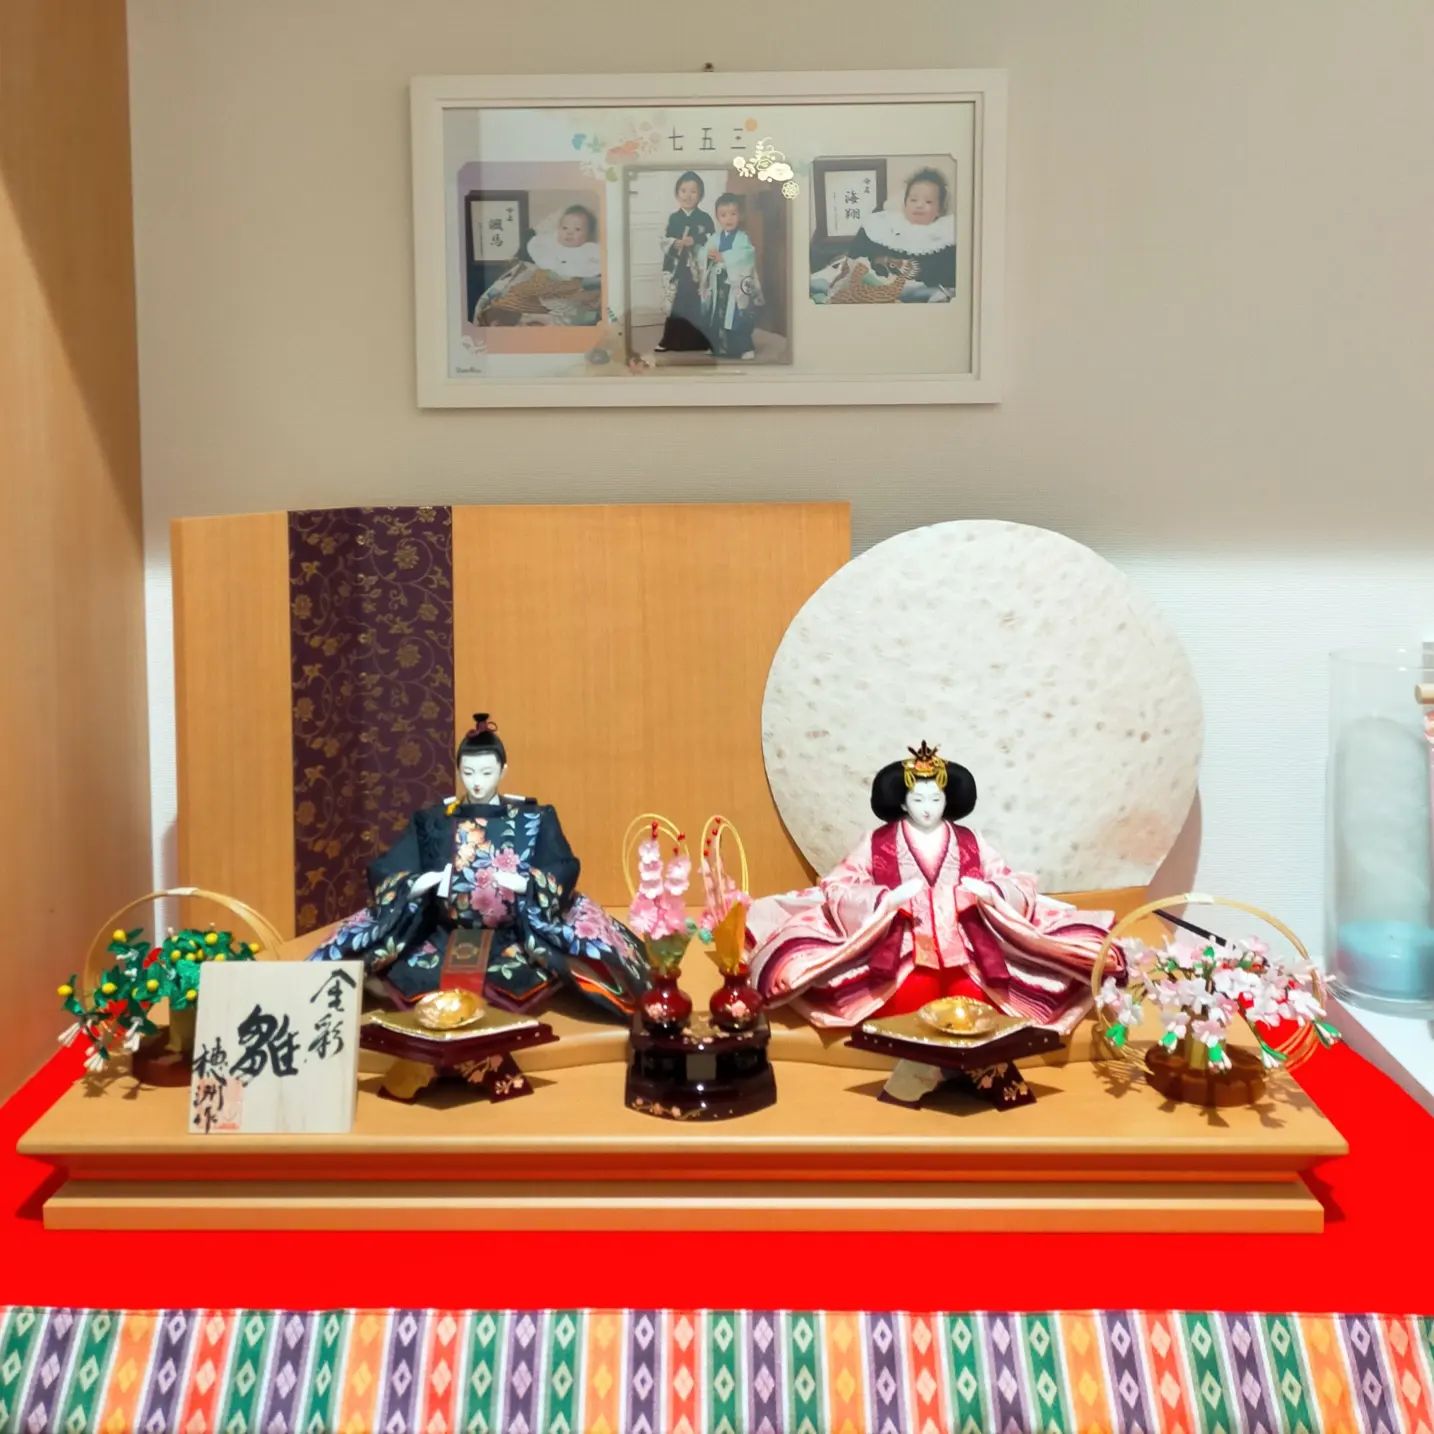 愛知県額田郡幸田町のお客様へお雛さま配送、飾り付けいたしました。- from Instagram